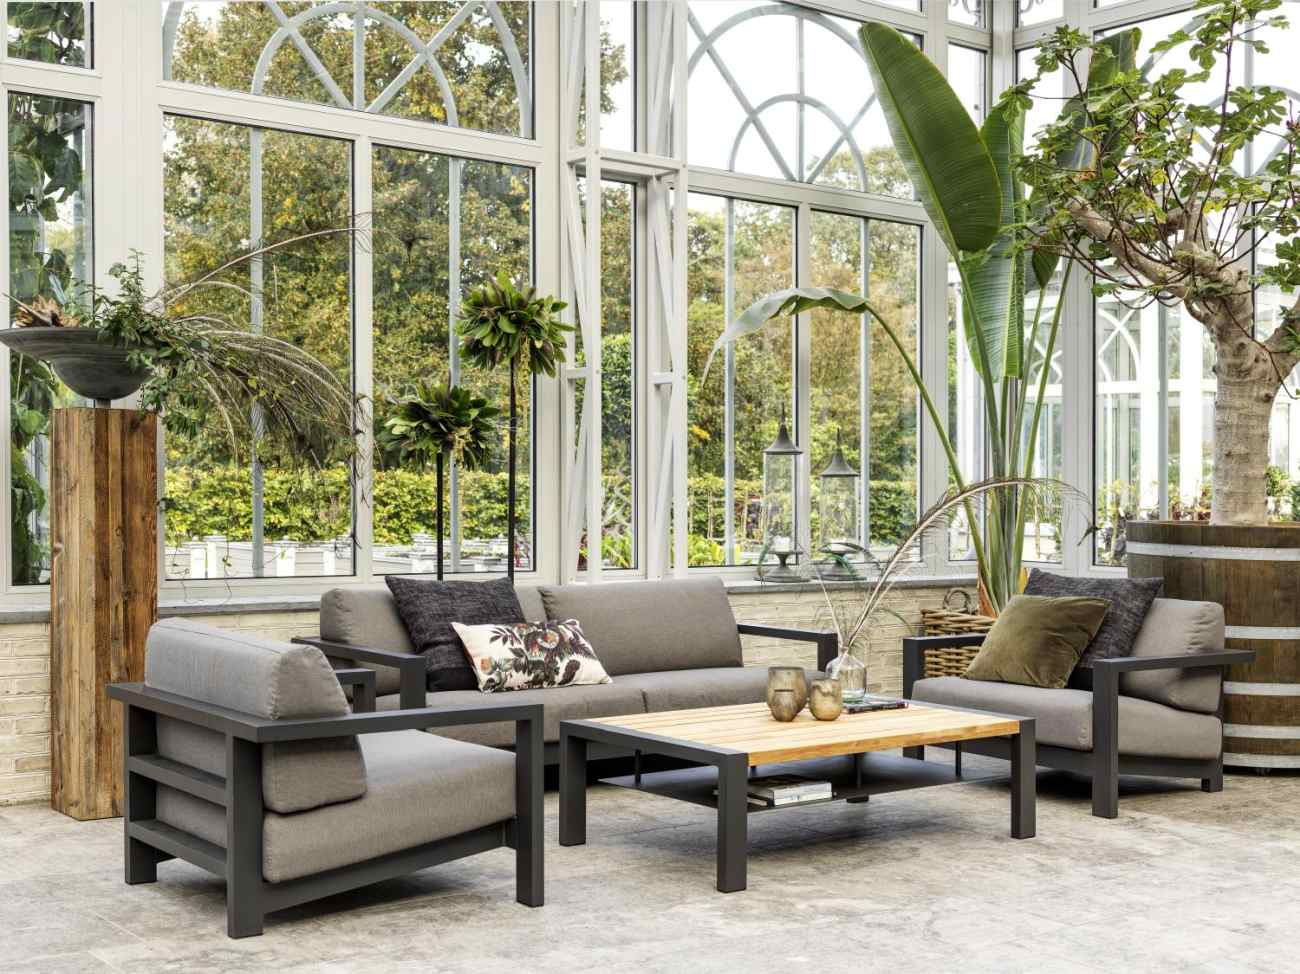 Das Gartensofa Amesdale überzeugt mit seinem modernen Design. Gefertigt wurde er aus Metall, welches einen schwarzen Farbton besitzt. Das Gestell ist auch aus Metall. Die Sitzhöhe des Sofas beträgt 39 cm.